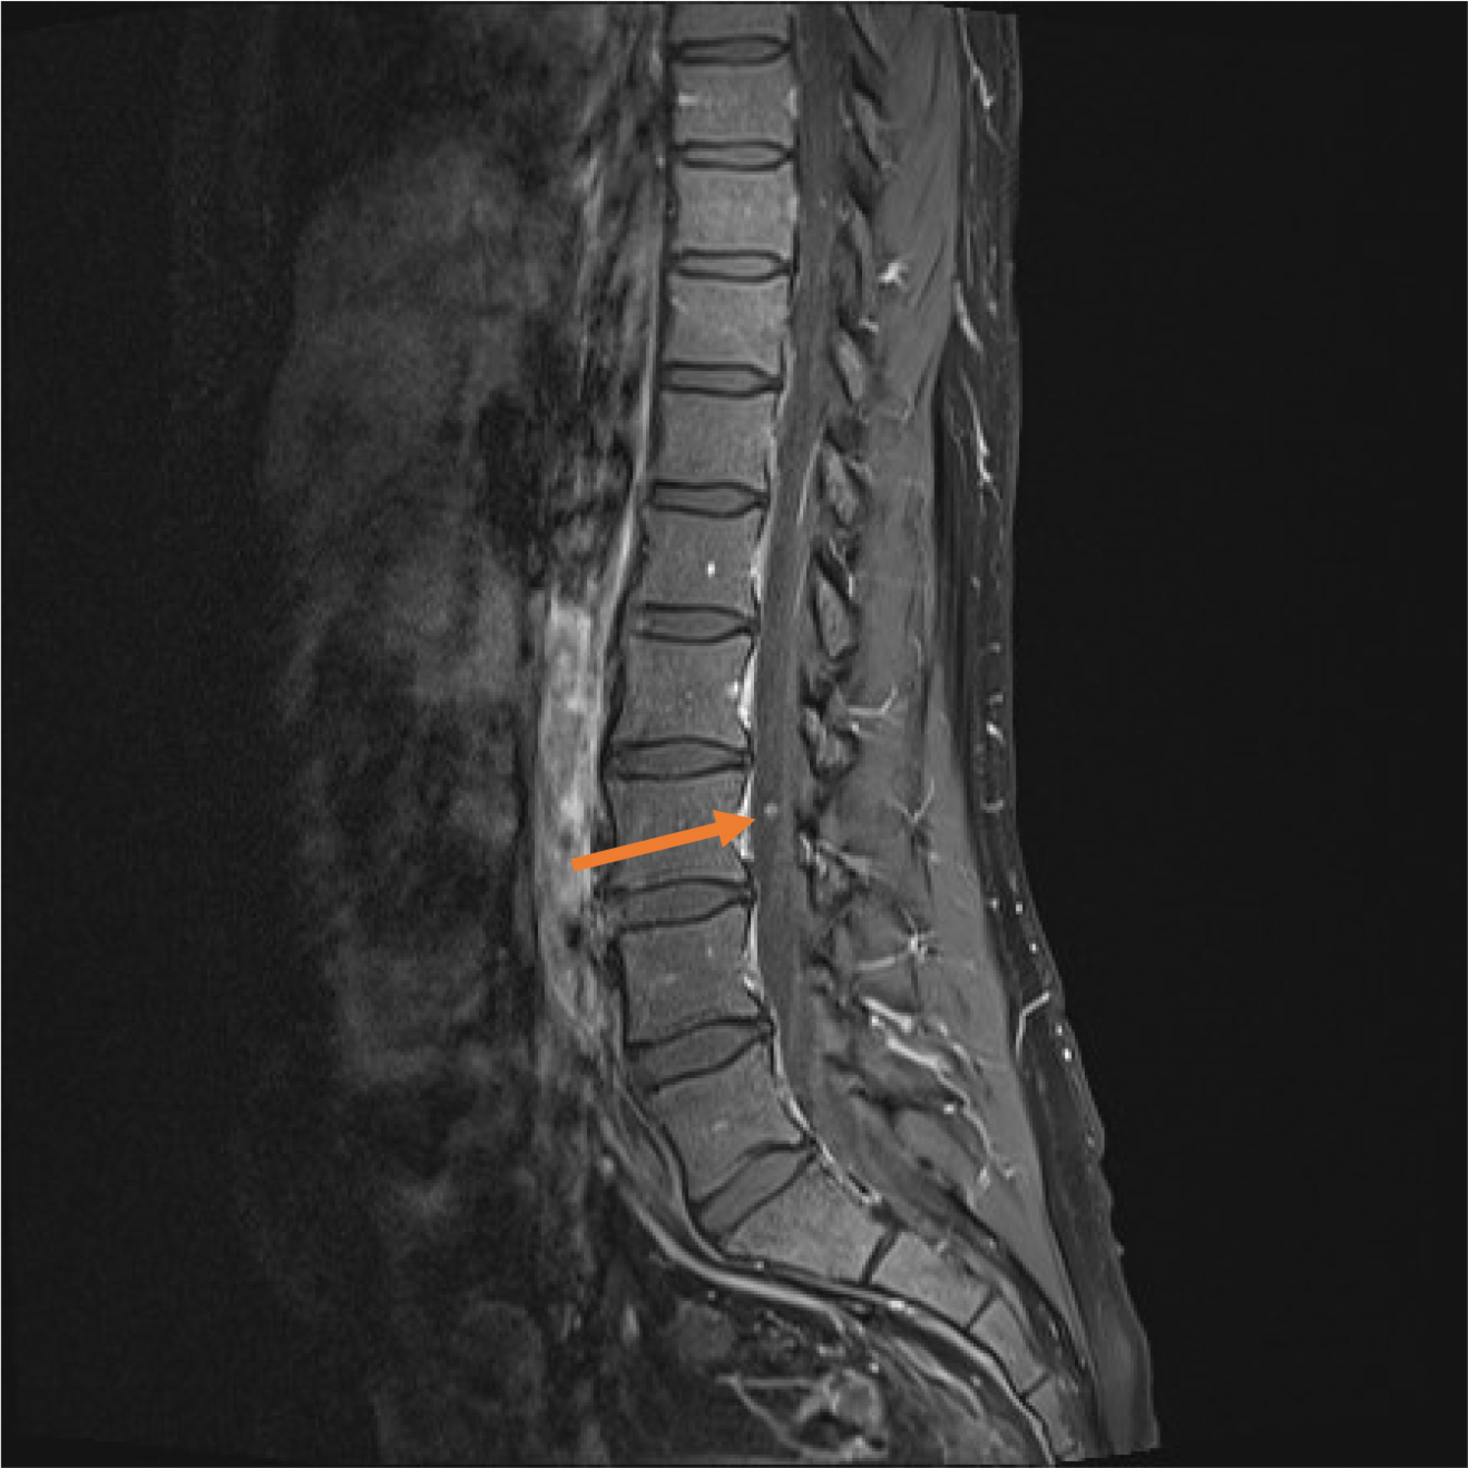 Sagittal T2 image of dorso-lumbar spine shows a hyper-intense